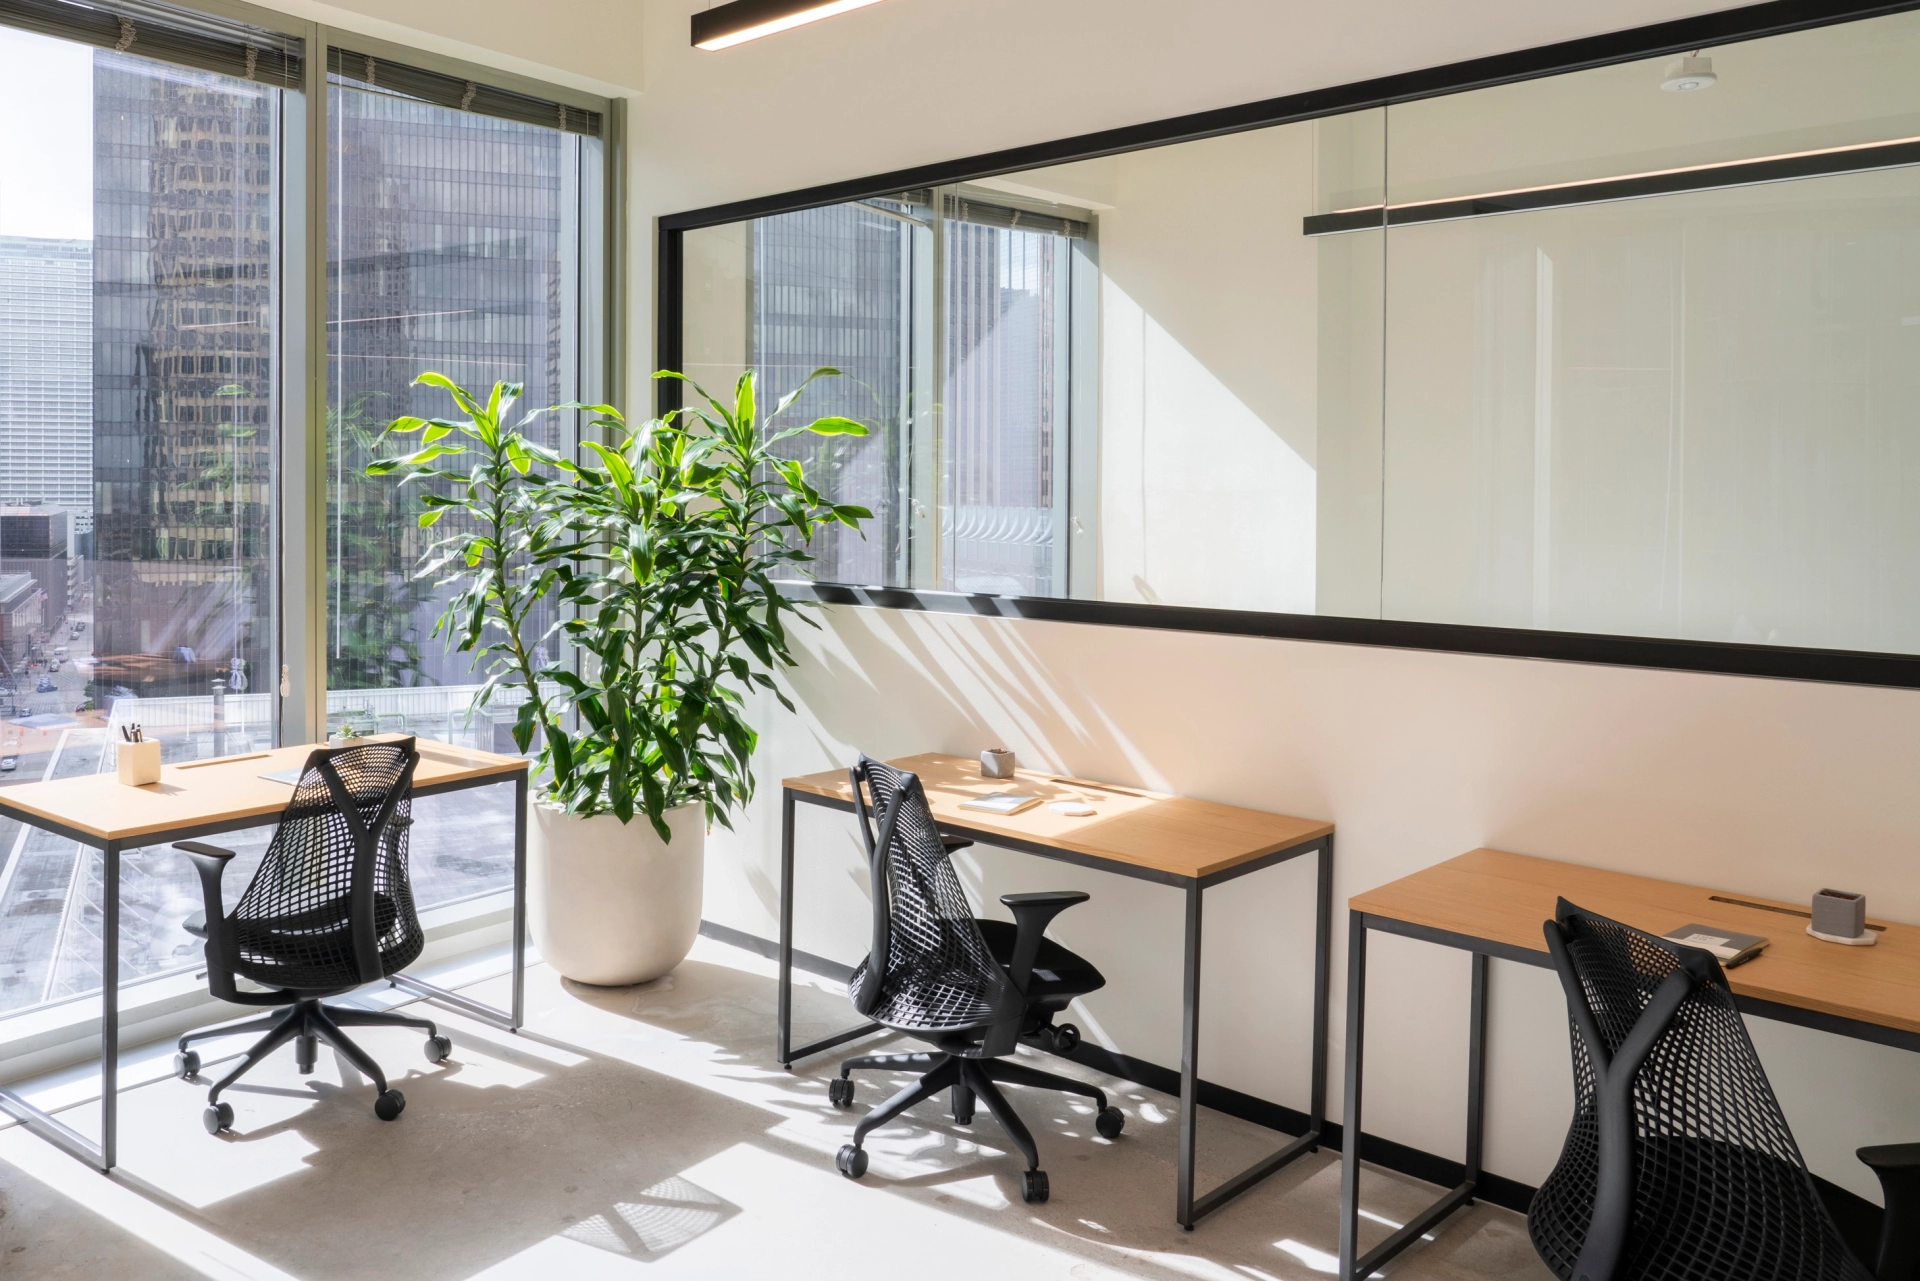 Een werkruimte in New York, uitgerust met twee bureaus, stoelen en een plant.